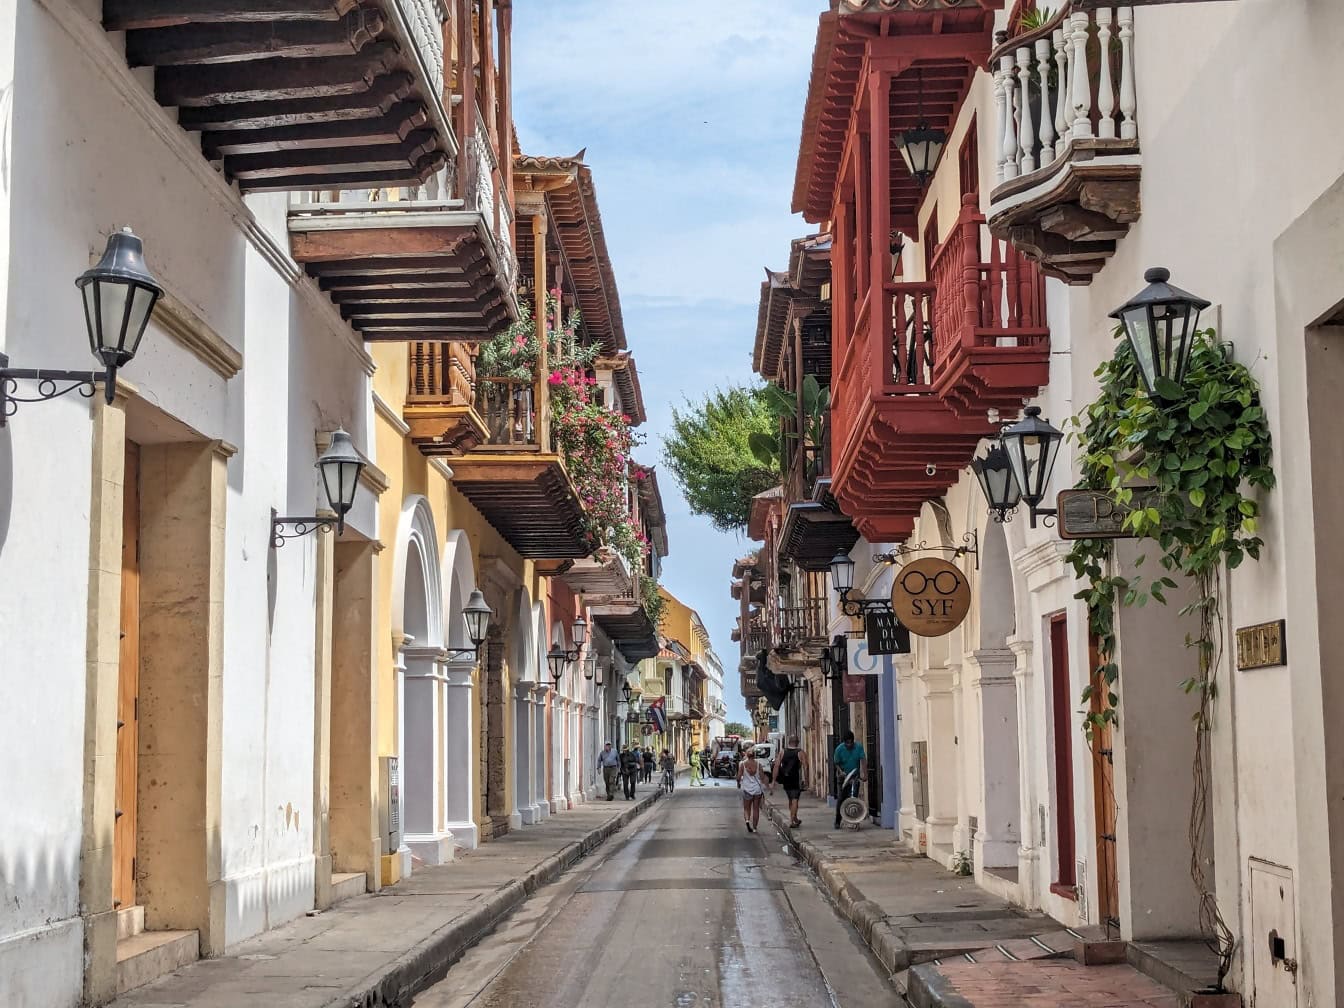 En gade i den gamle del af byen Cartagena i Columbia